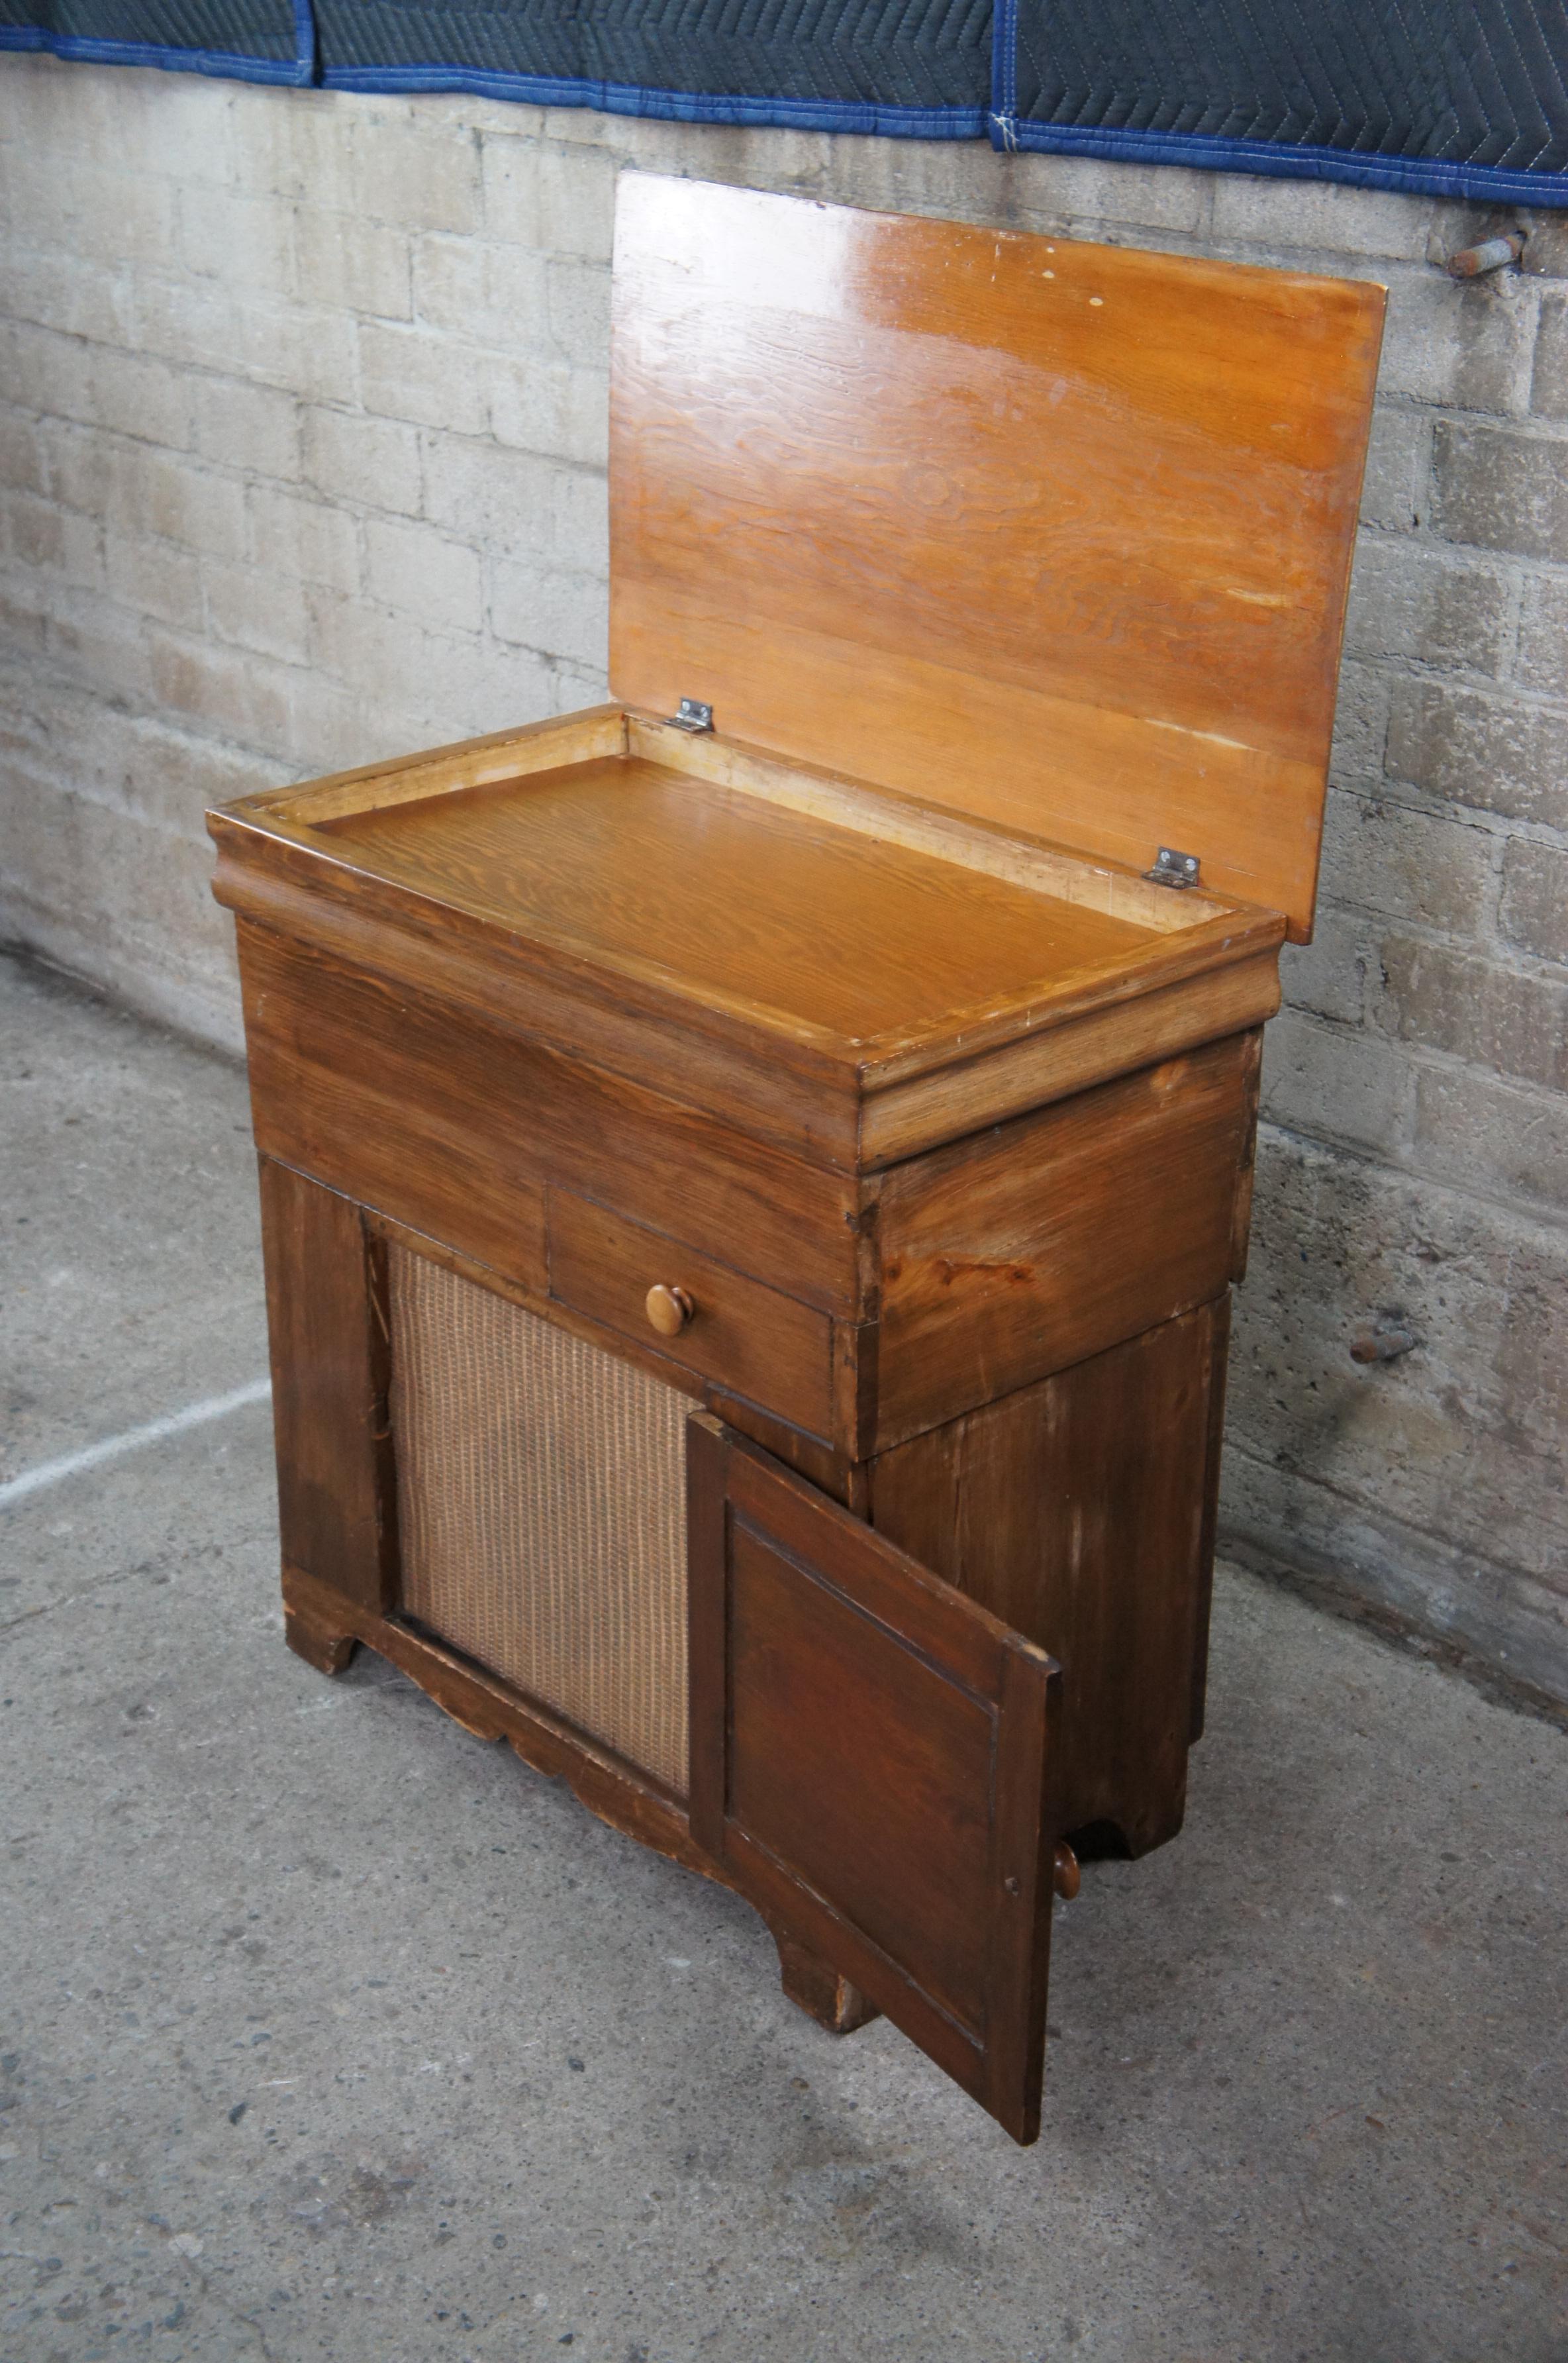 wooden dough box